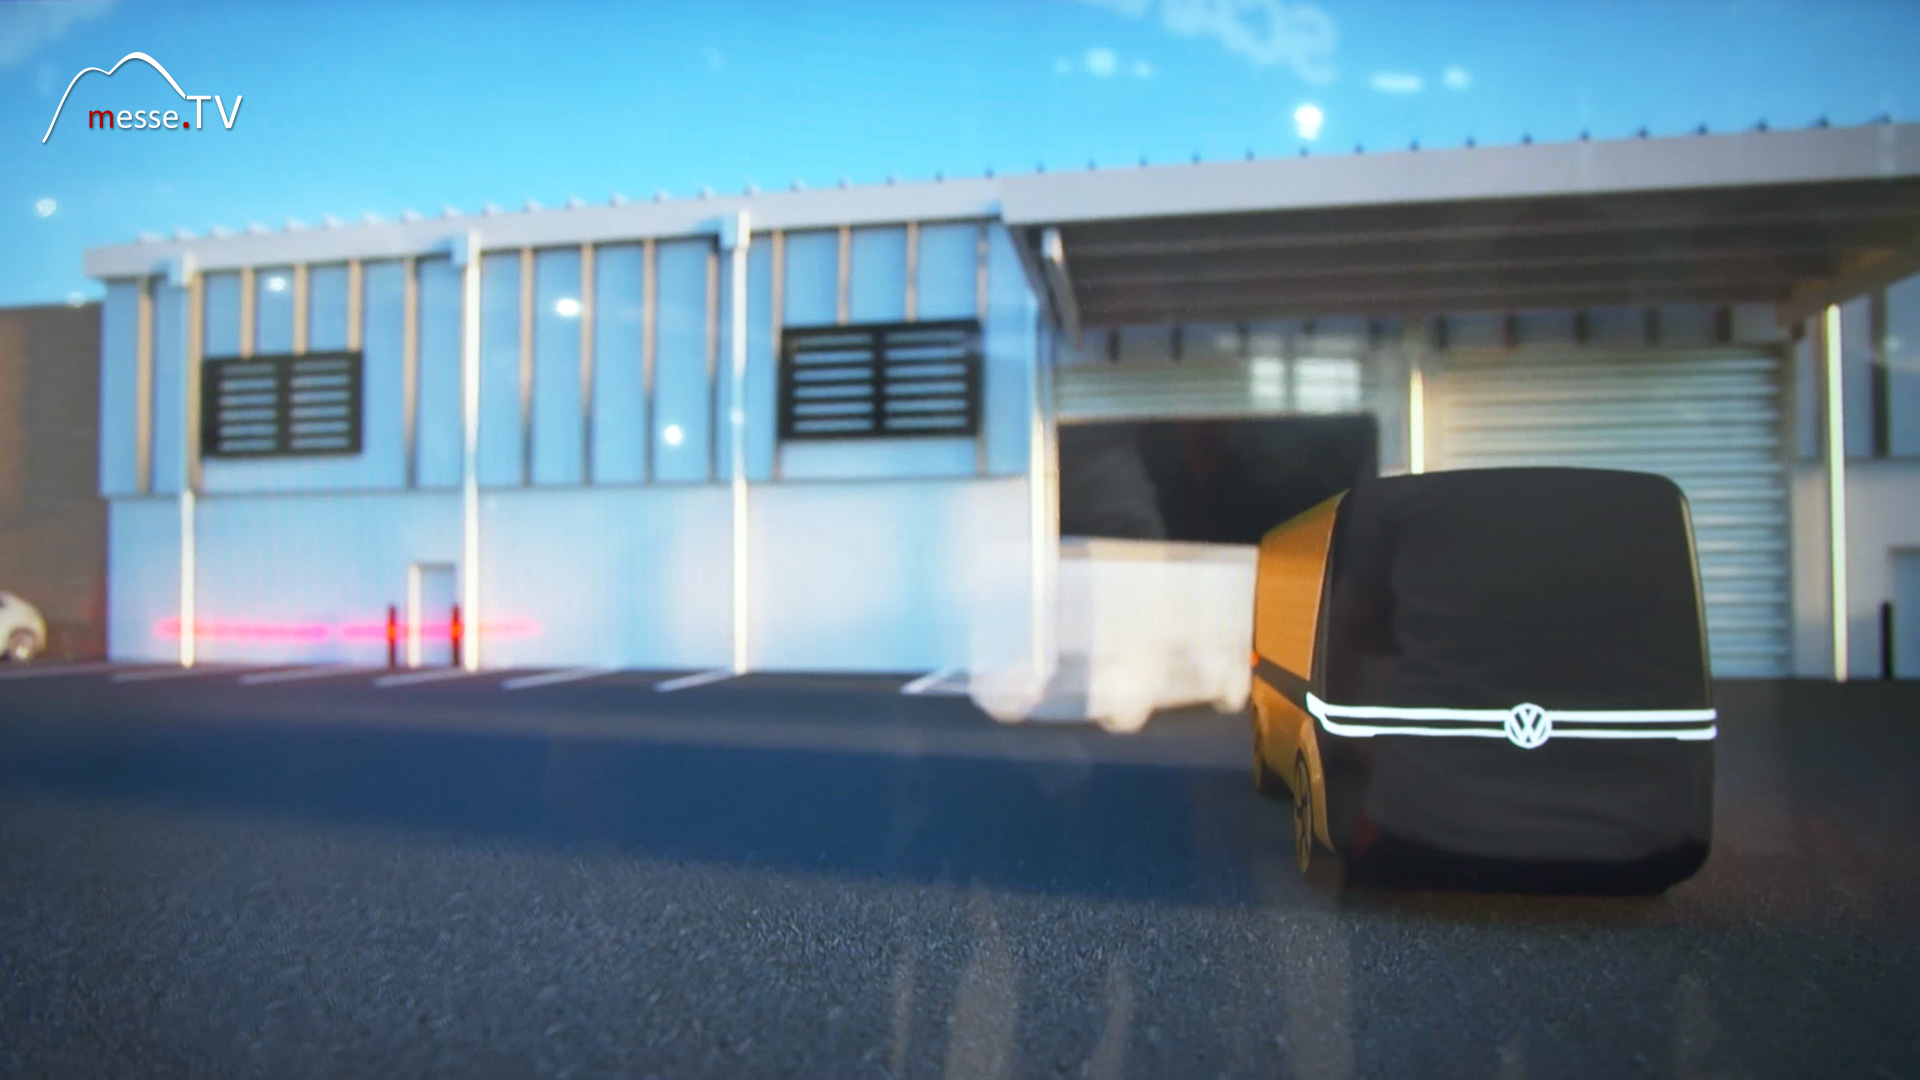 VW commercial vehicles simulation autonomous driving transport logistic 2019